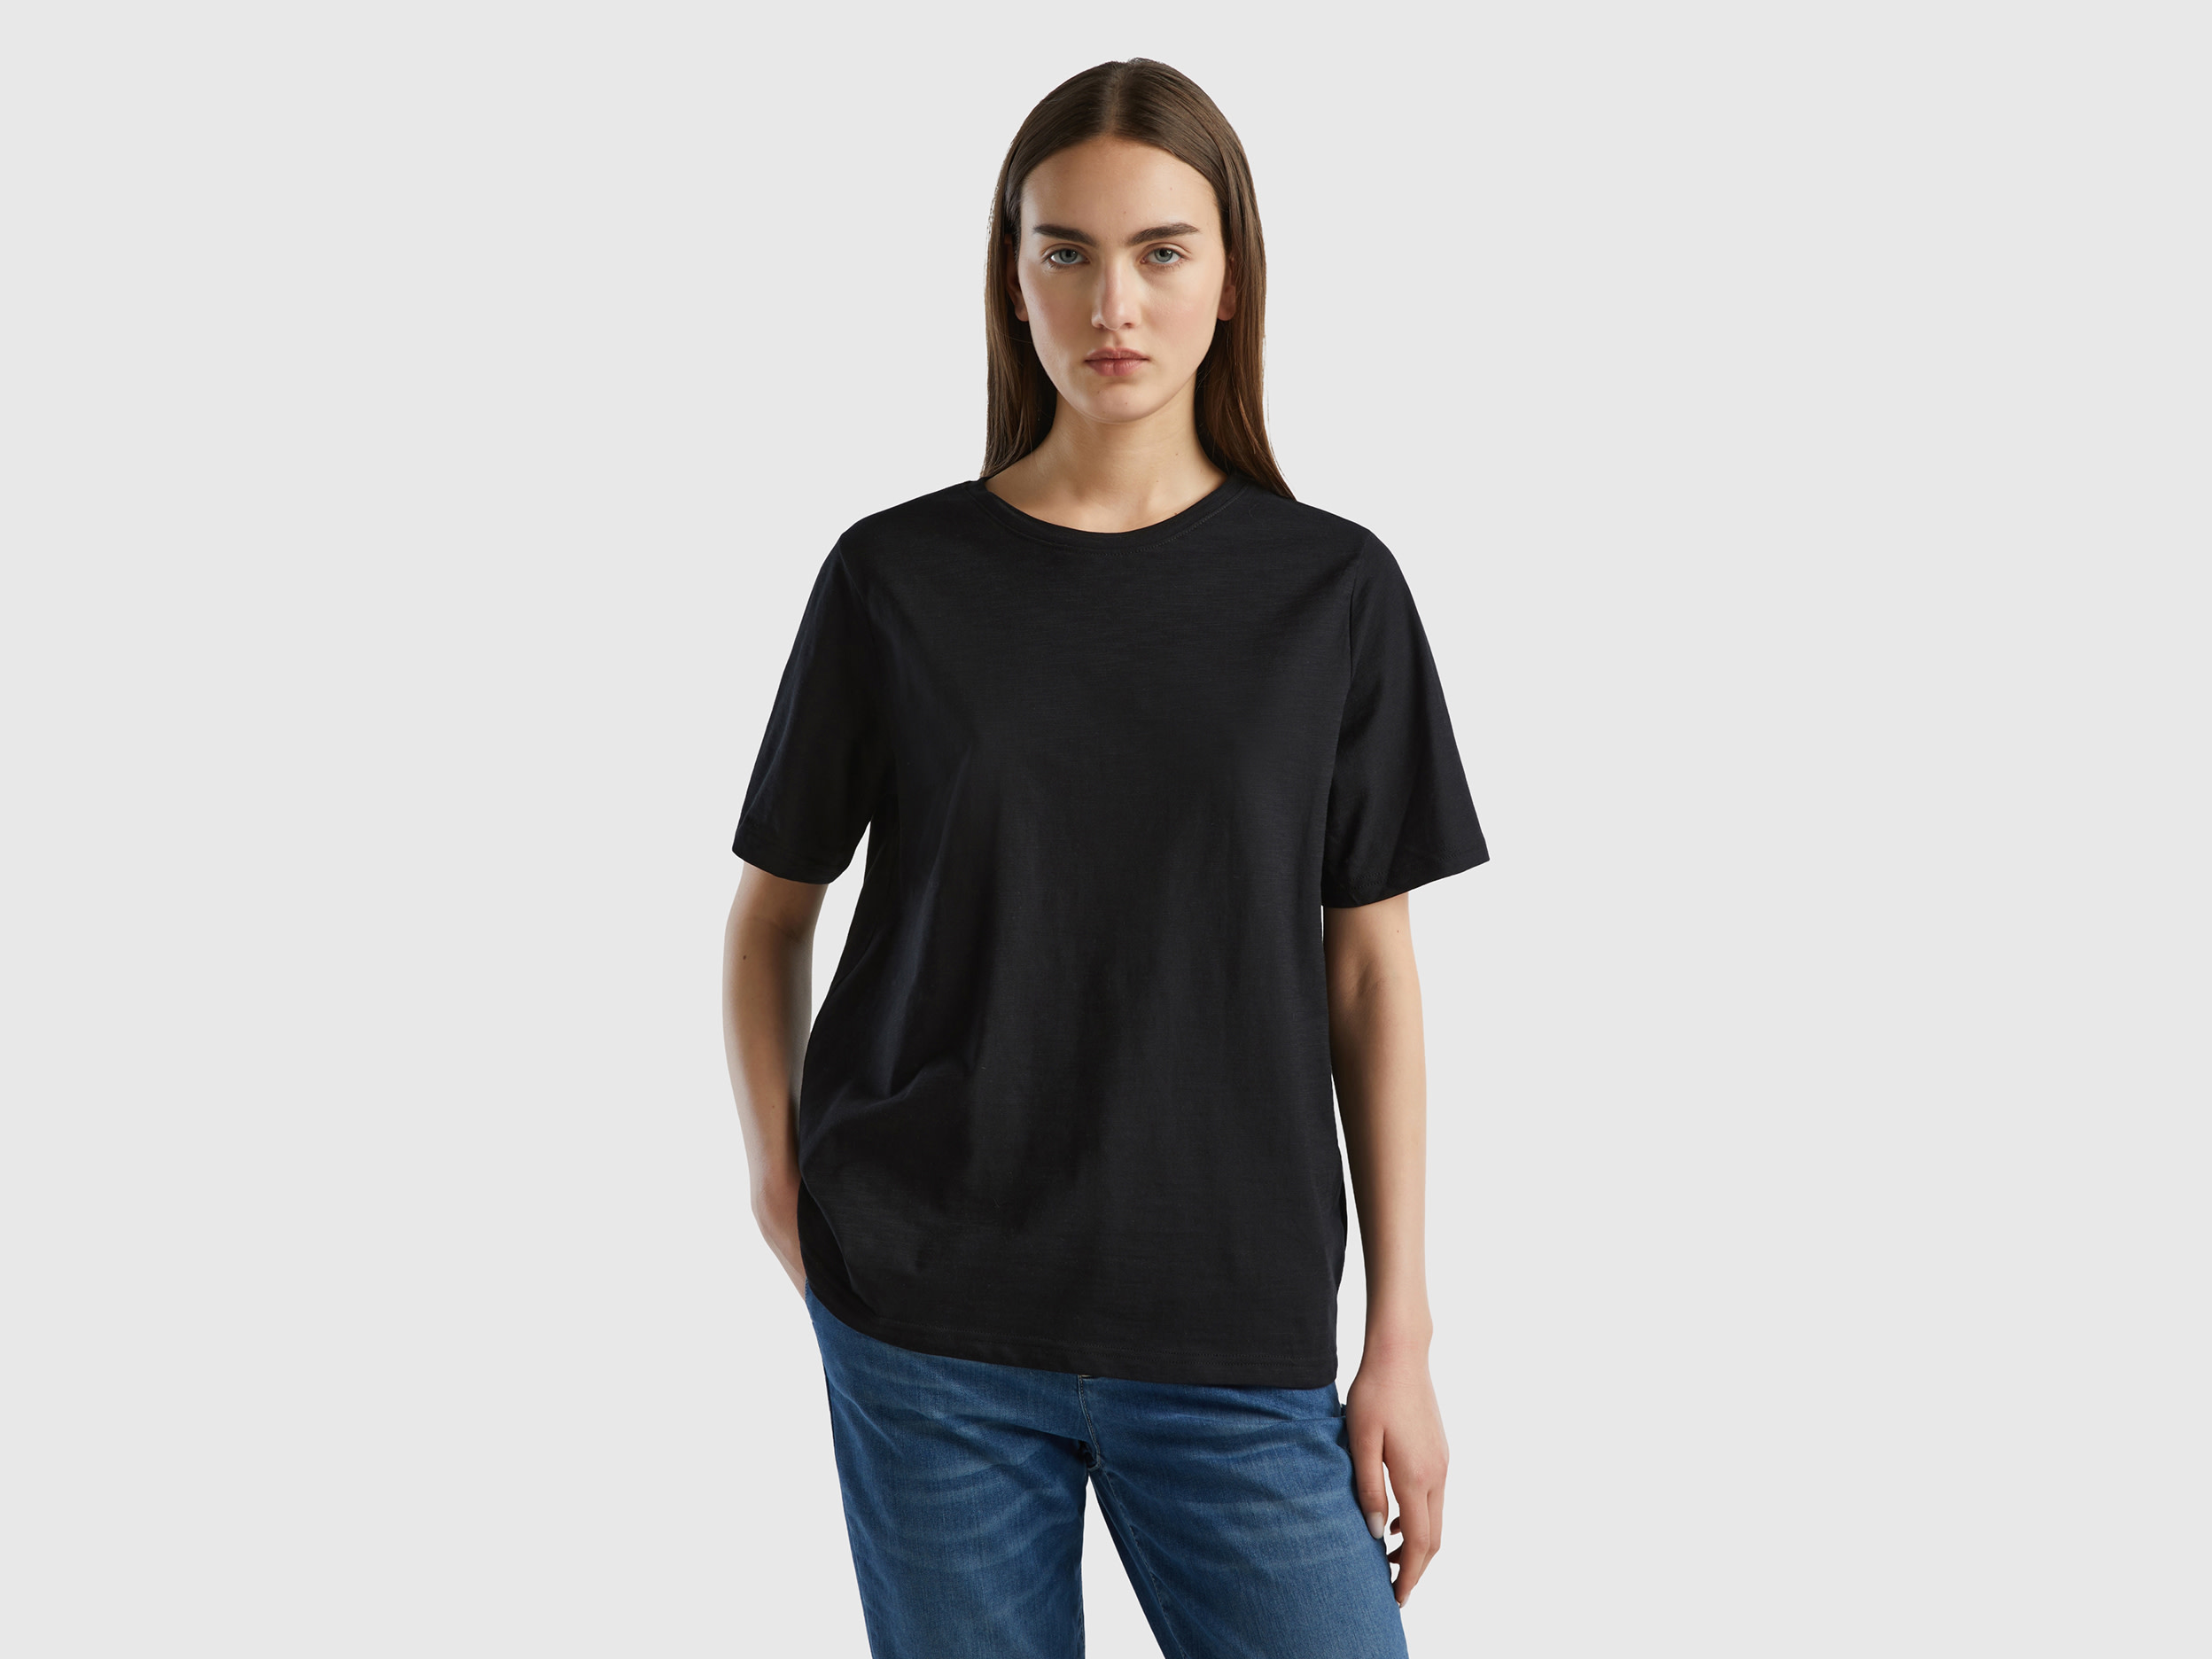 Benetton, Crew Neck T-shirt In Slub Cotton, size XXS, Black, Women